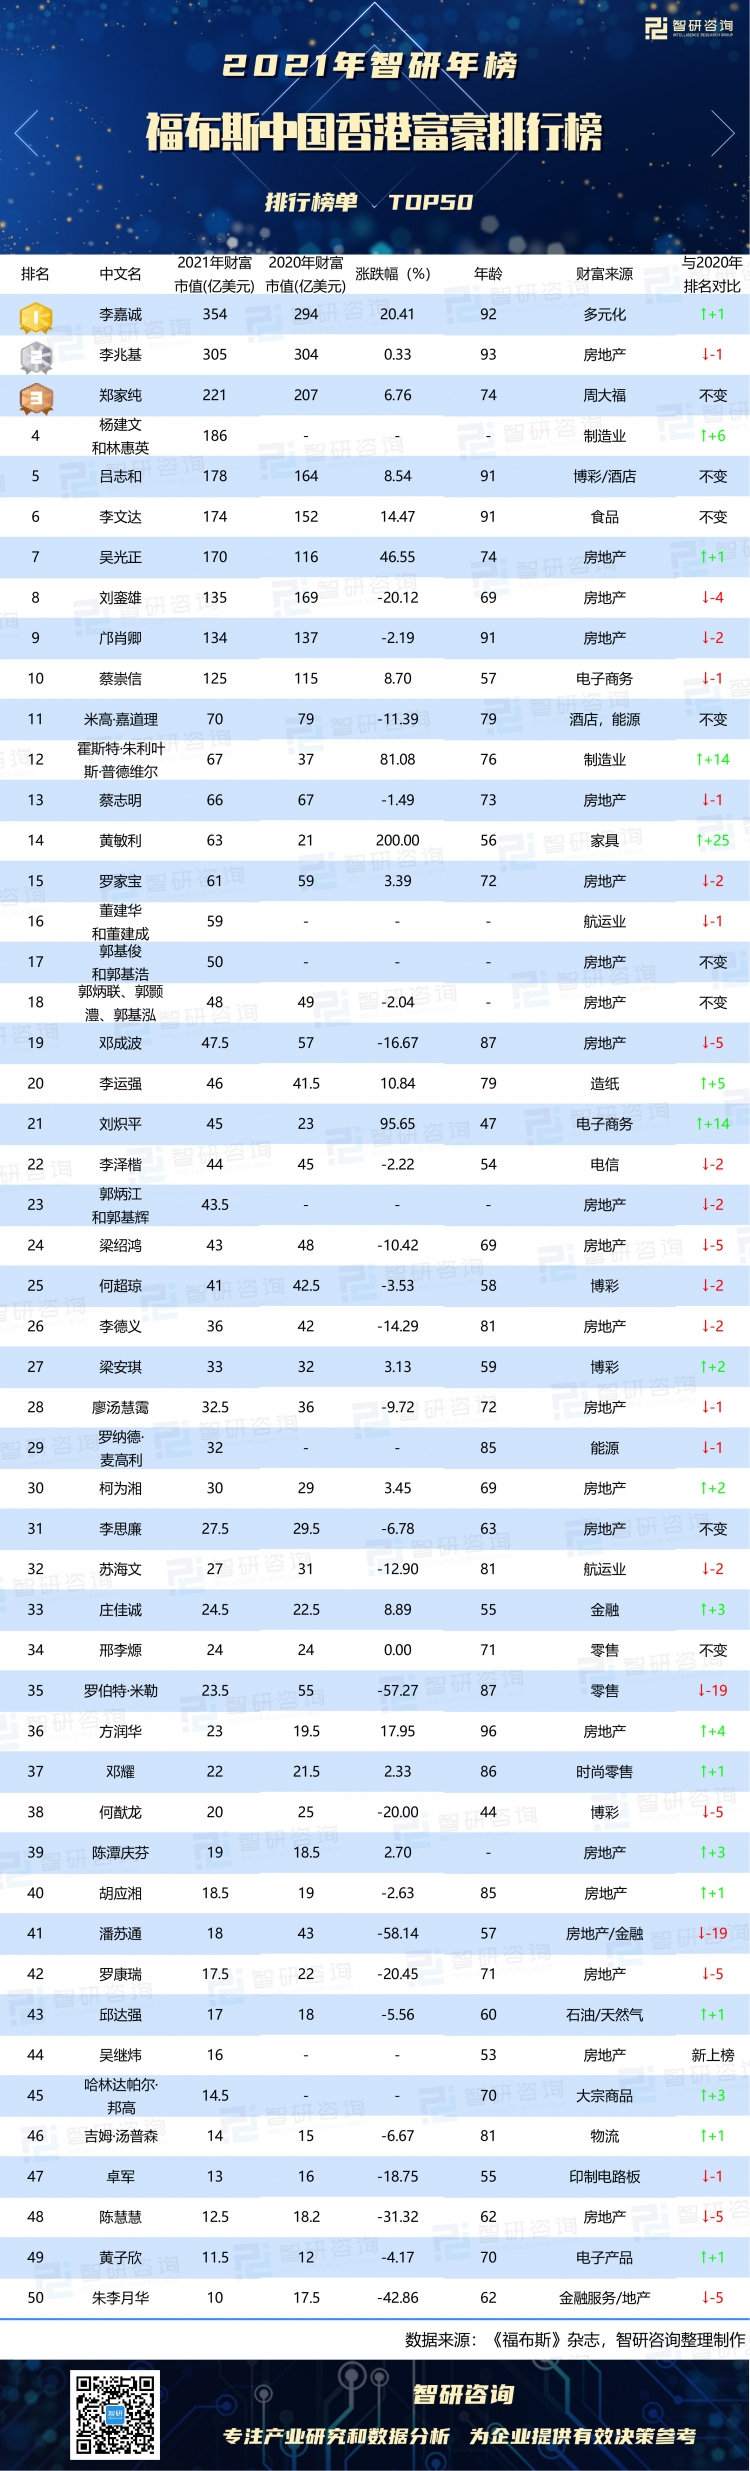 2021年福布斯中国香港富豪排行榜:李嘉诚荣登榜首,财富值猛增20.